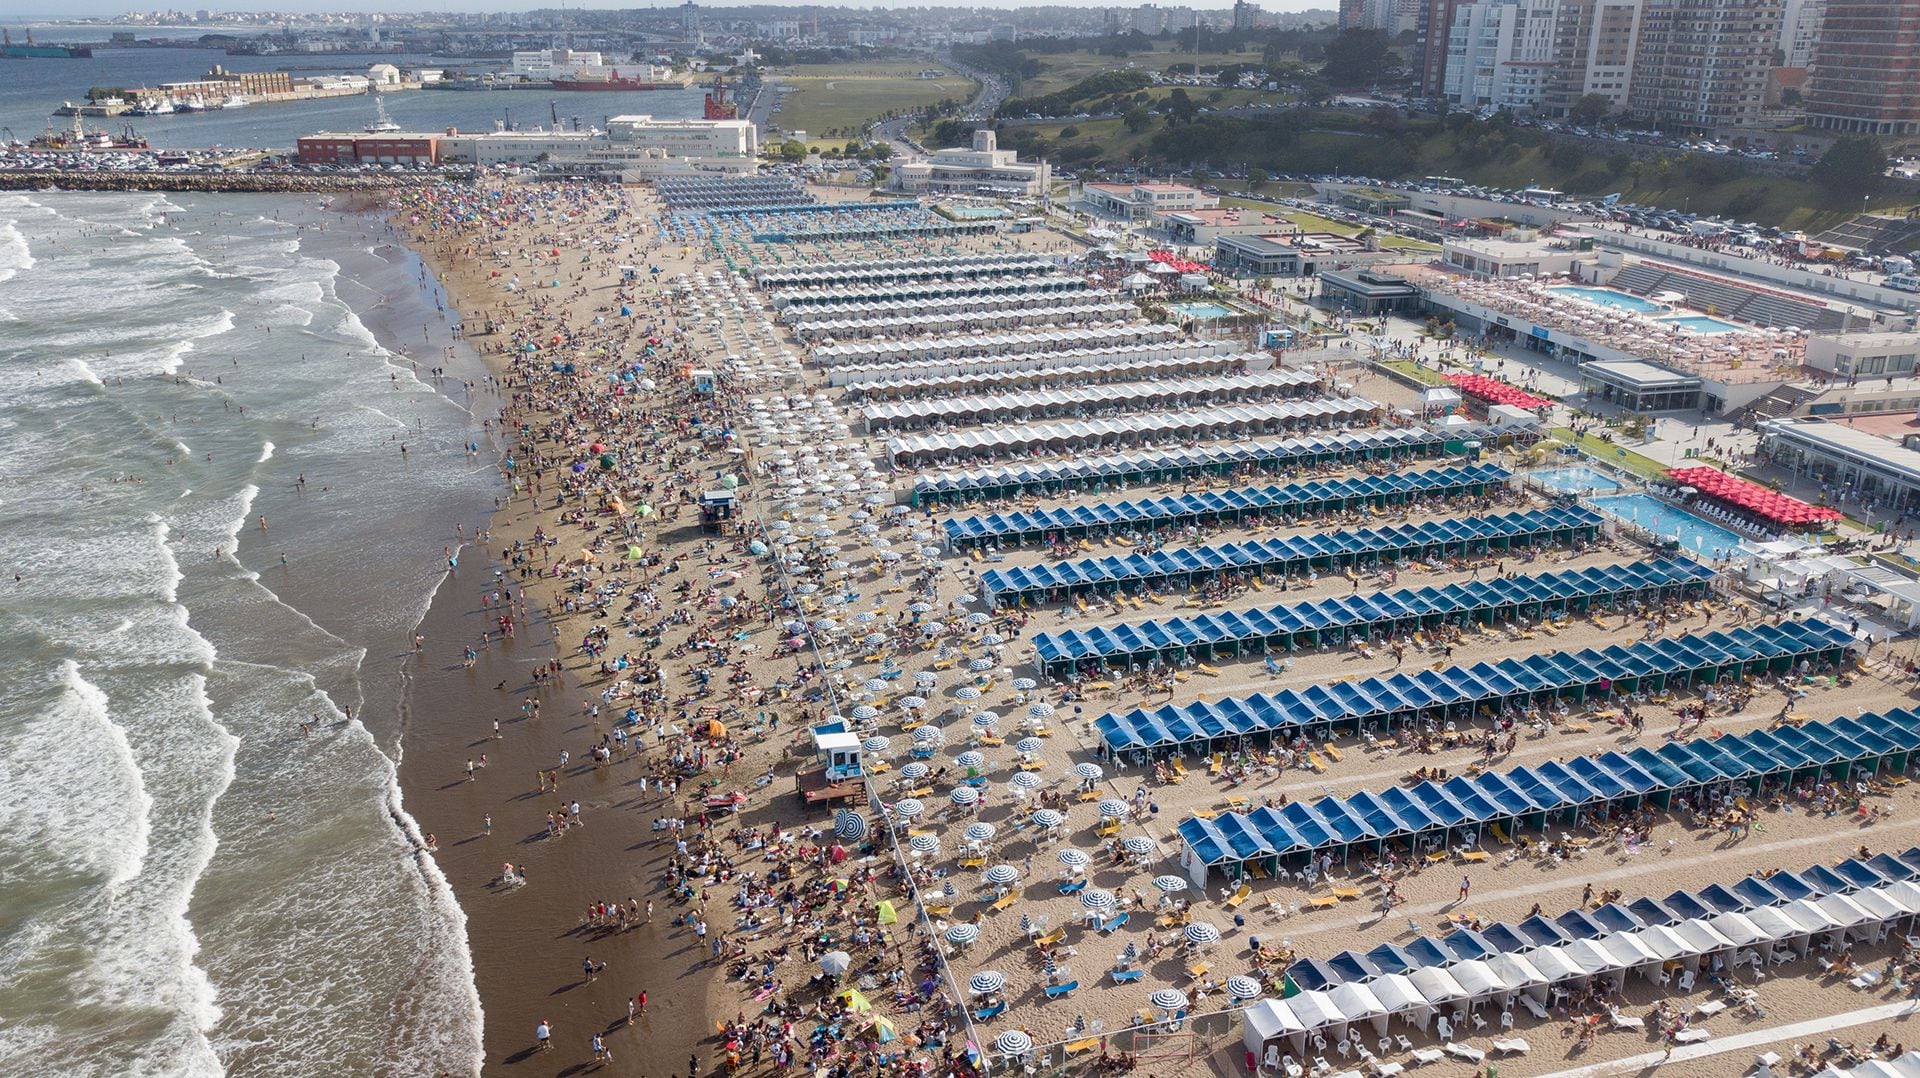 El verano de 2019 y el aluvión de turistas en Mar del Plata, sin imaginar que un año más tarde estallaría la pandemia de coronavirus y las playas quedarían vacías